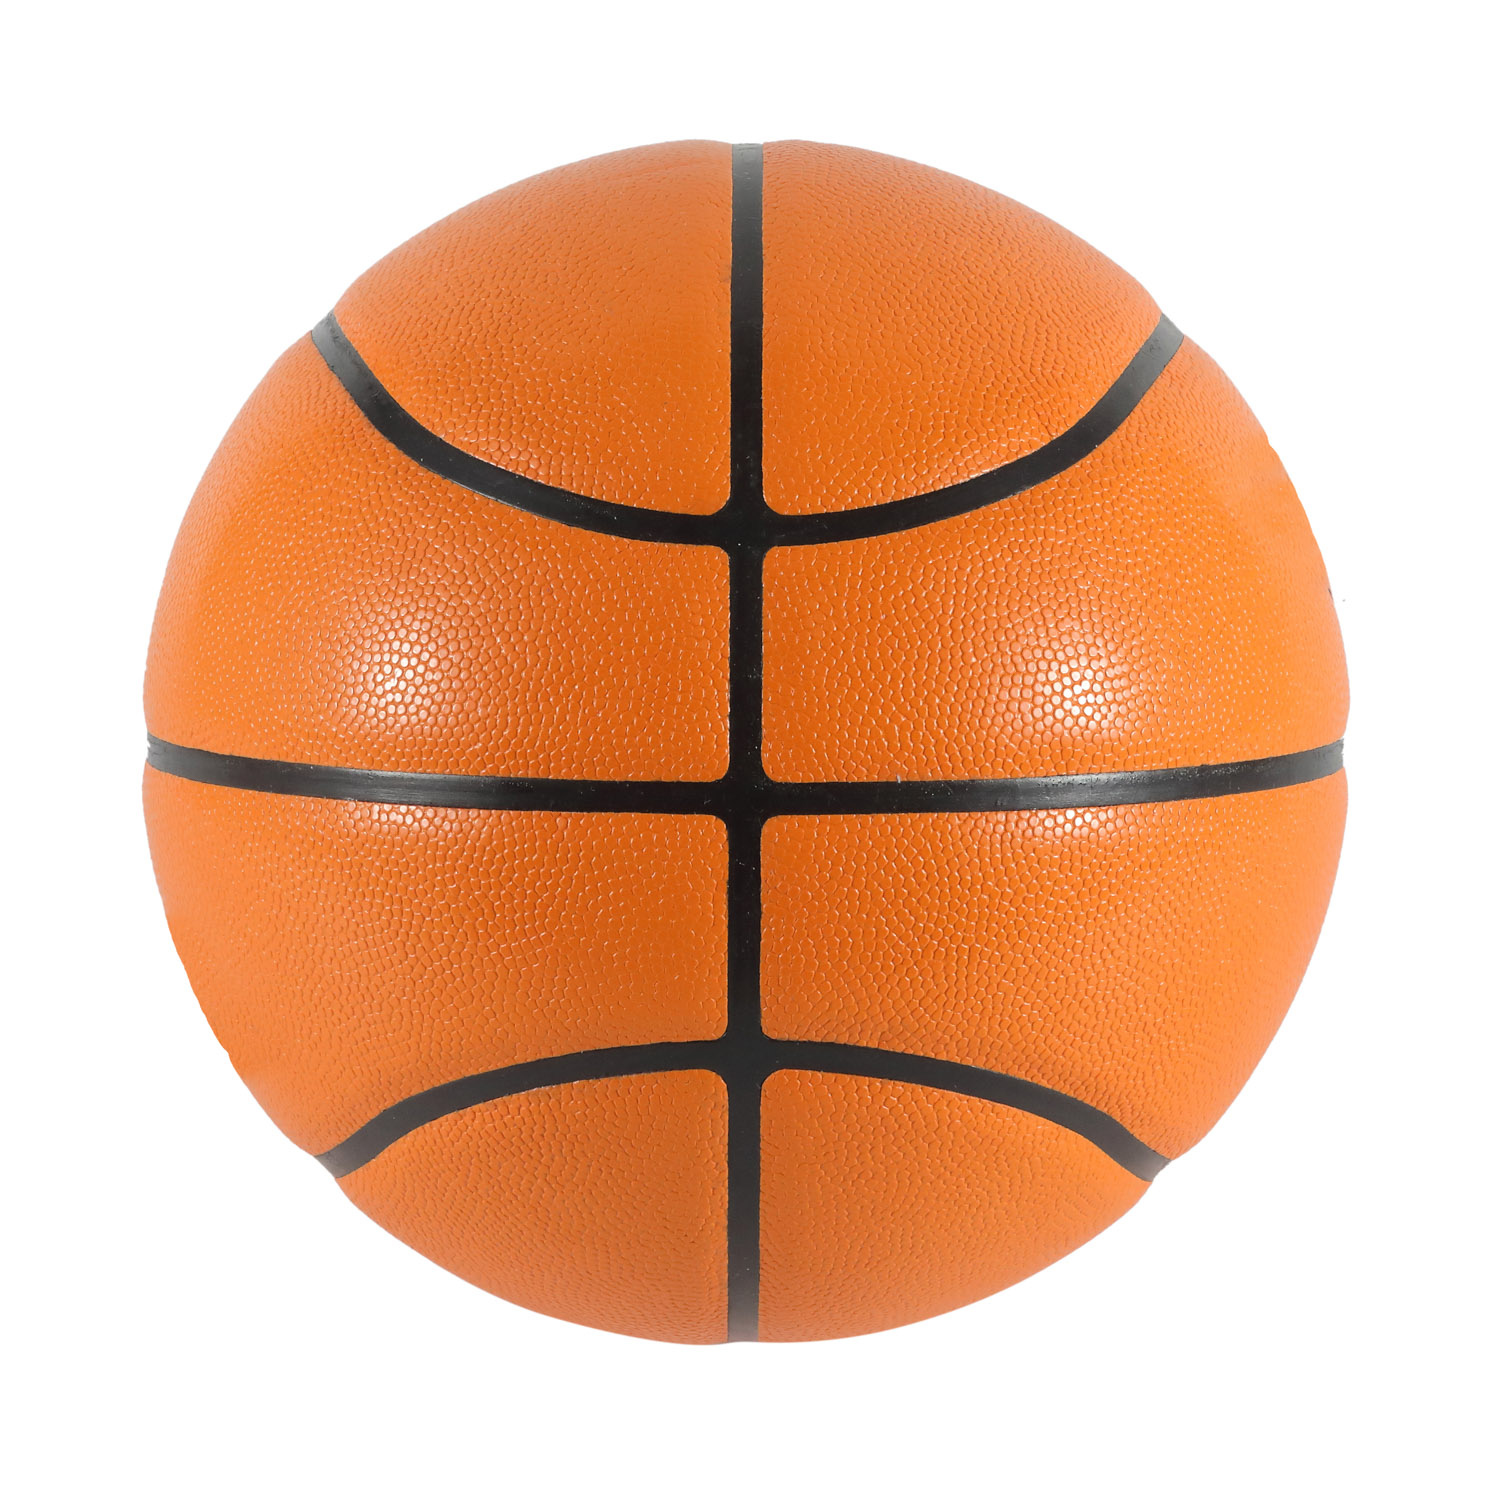 OEM interior laminado tamaño oficial material del baloncesto de la microfibra de China